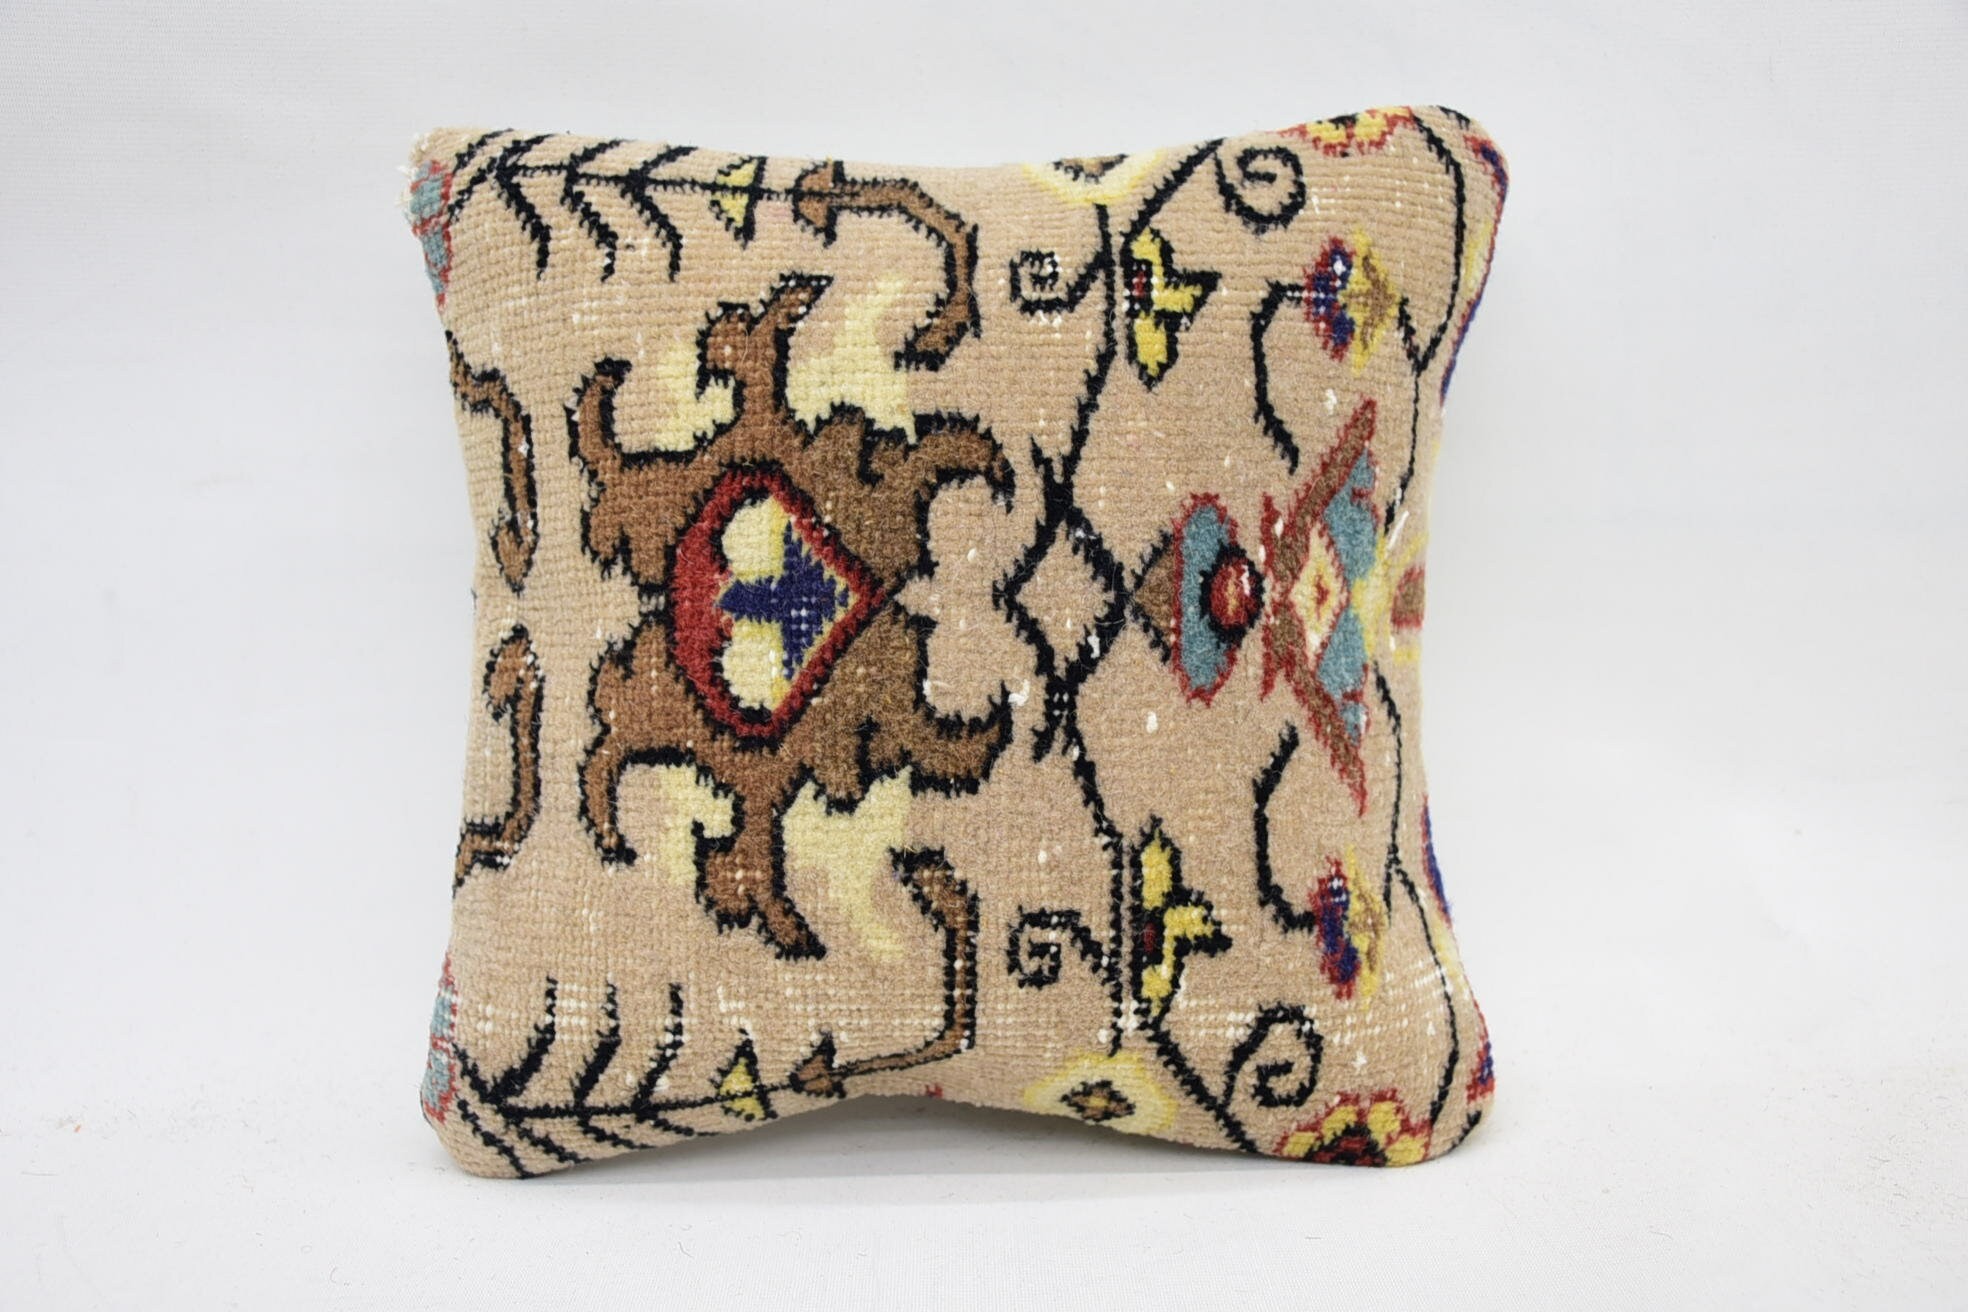 Throw Kilim Pillow, Knitted Cushion, Handmade Kilim Cushion, 12"x12" Beige Pillow Cover, Sofa Cushion Cover, Boho Pillow